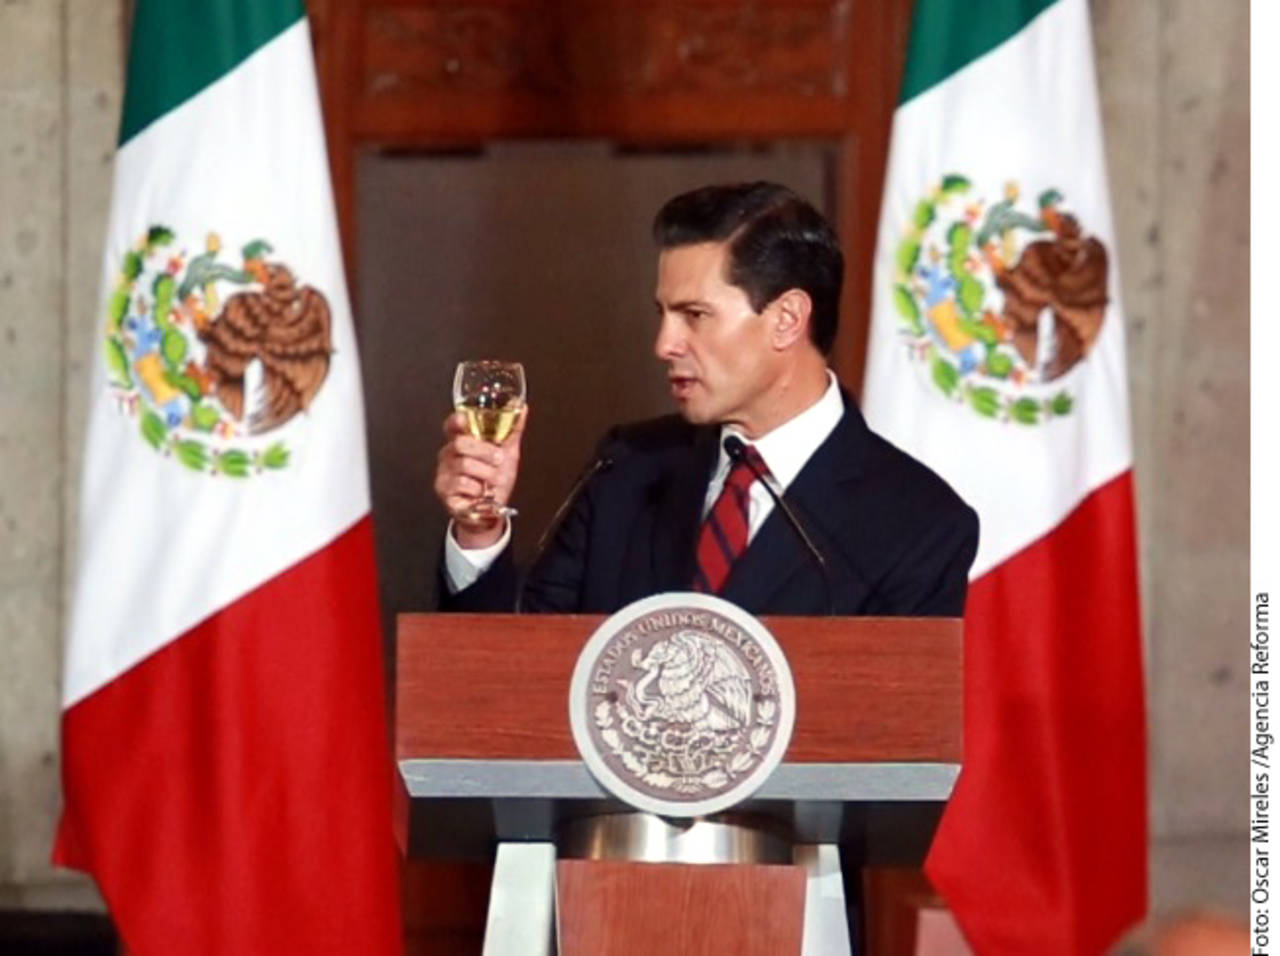 Alzó su copa. Enrique Peña Nieto hizo un brindis por México en su reunión con embajadores.